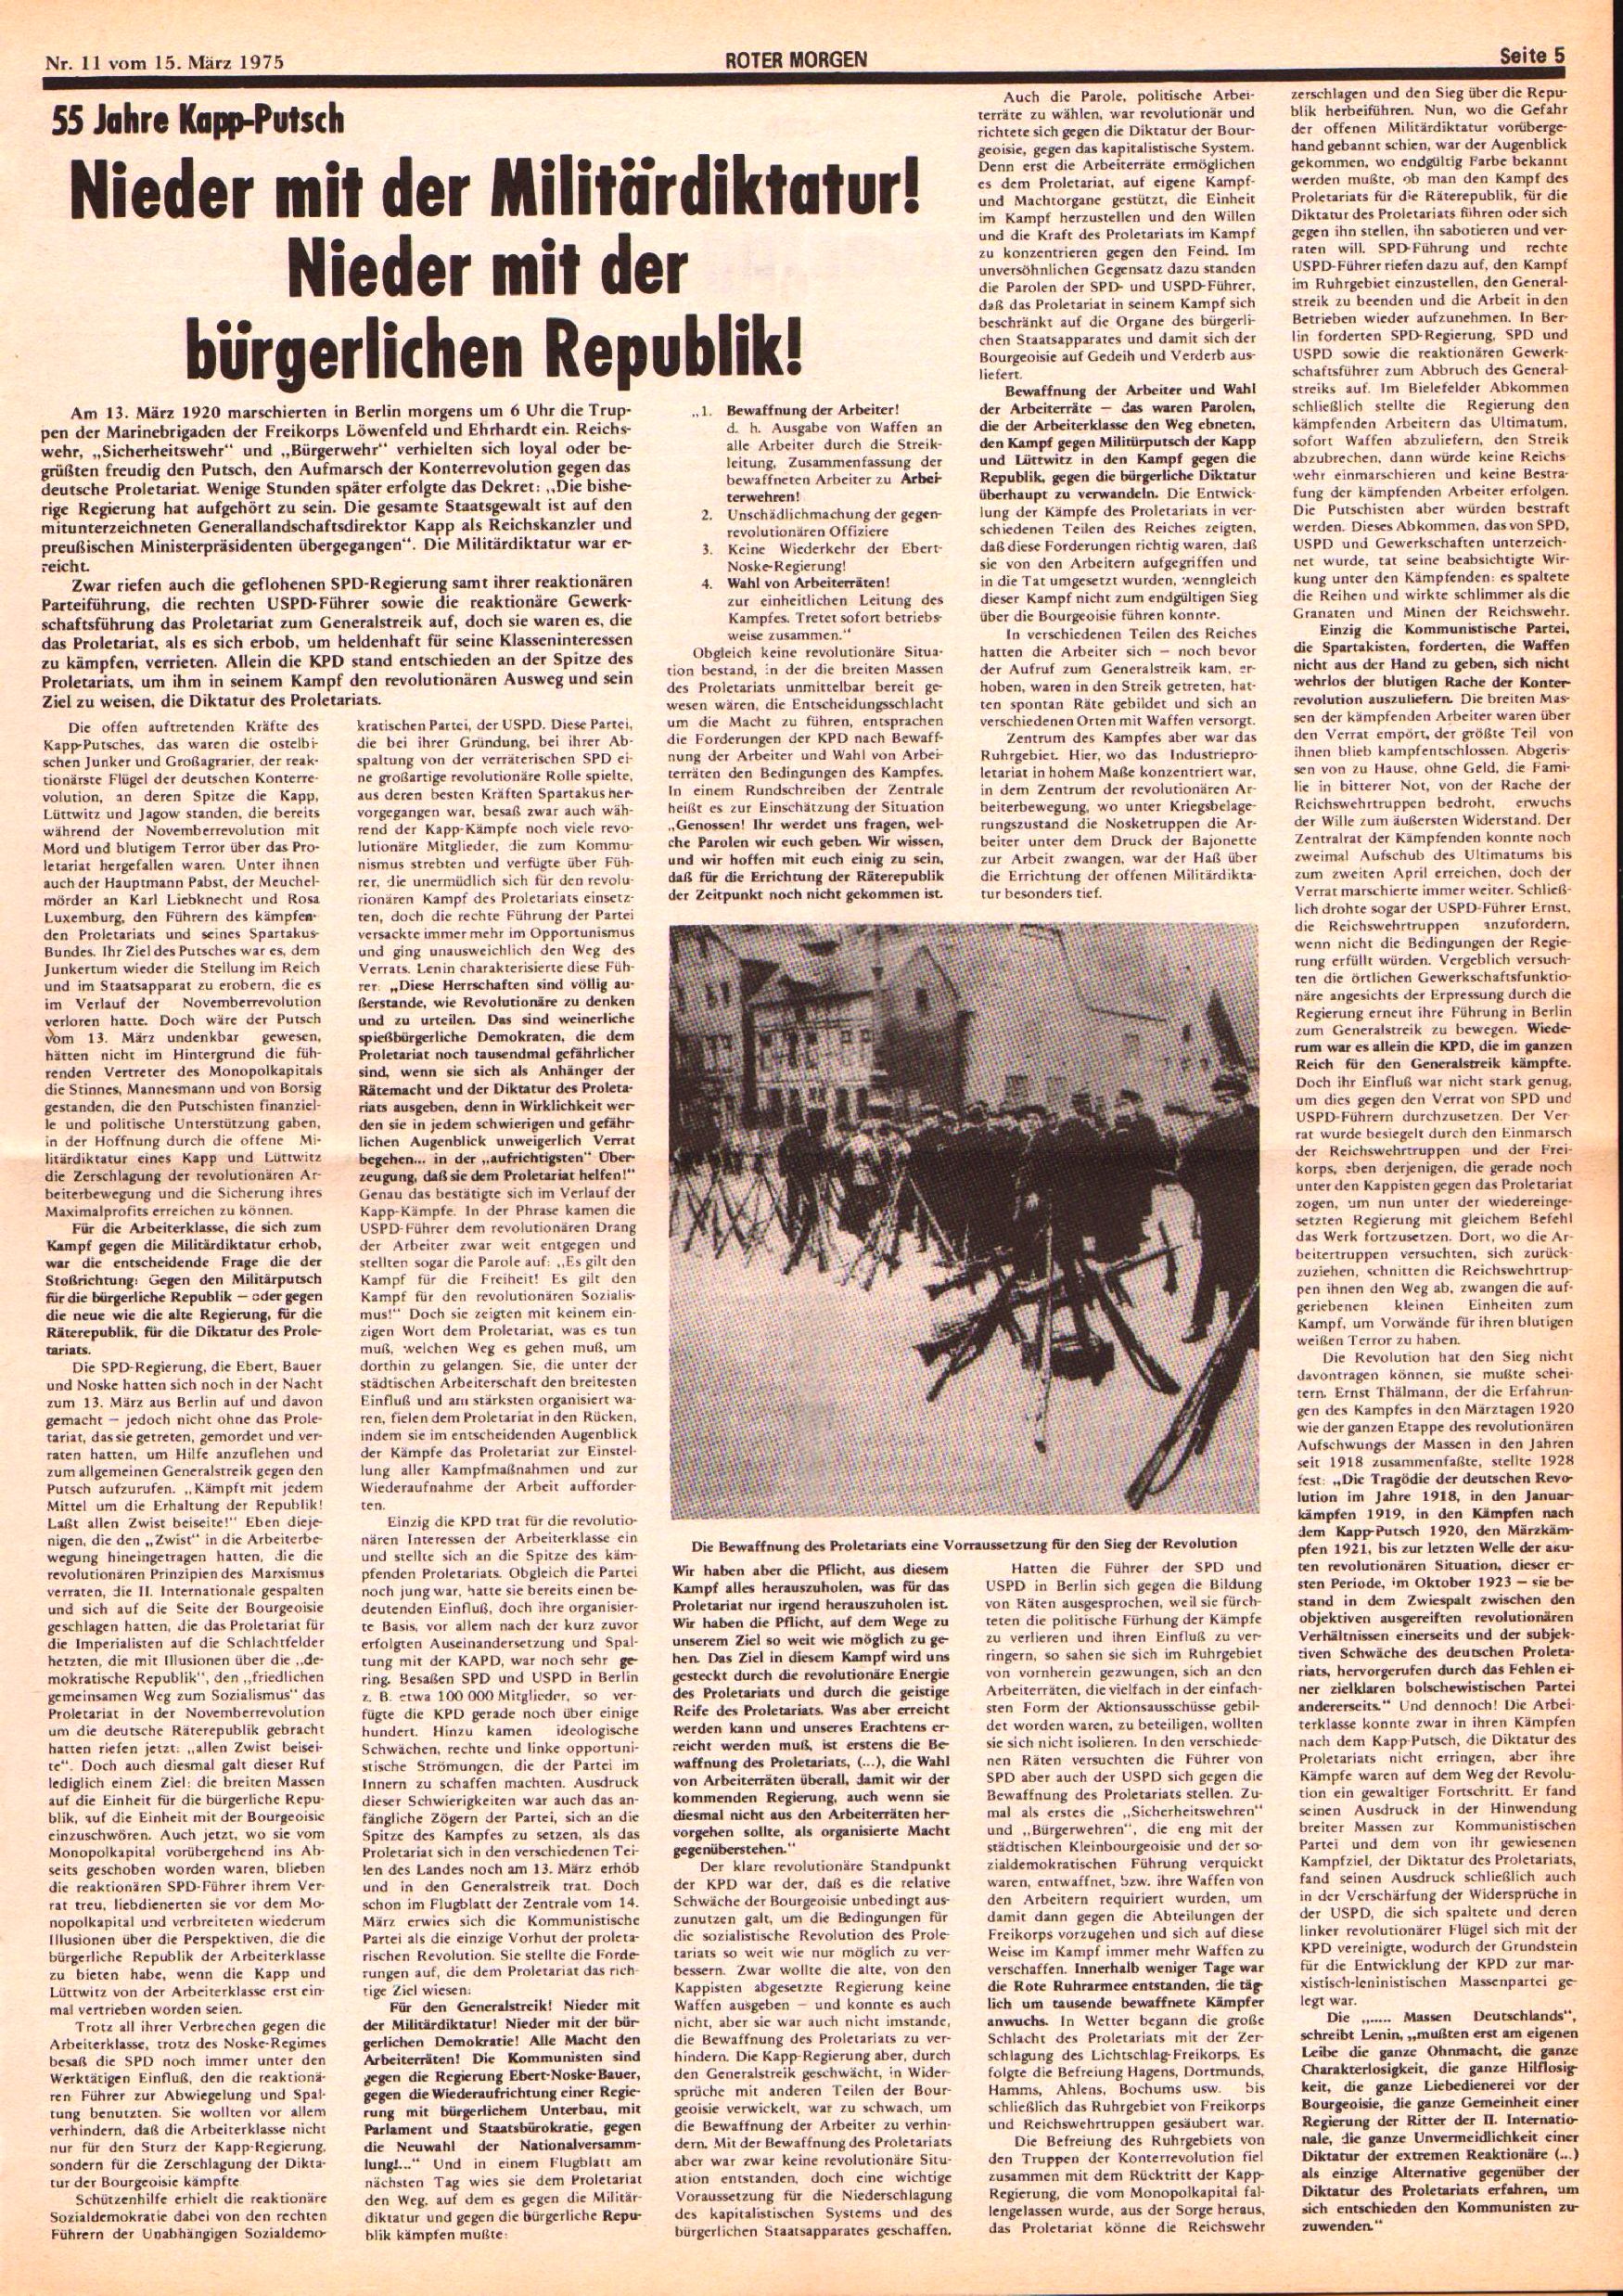 Roter Morgen, 9. Jg., 15. März 1975, Nr. 11, Seite 5